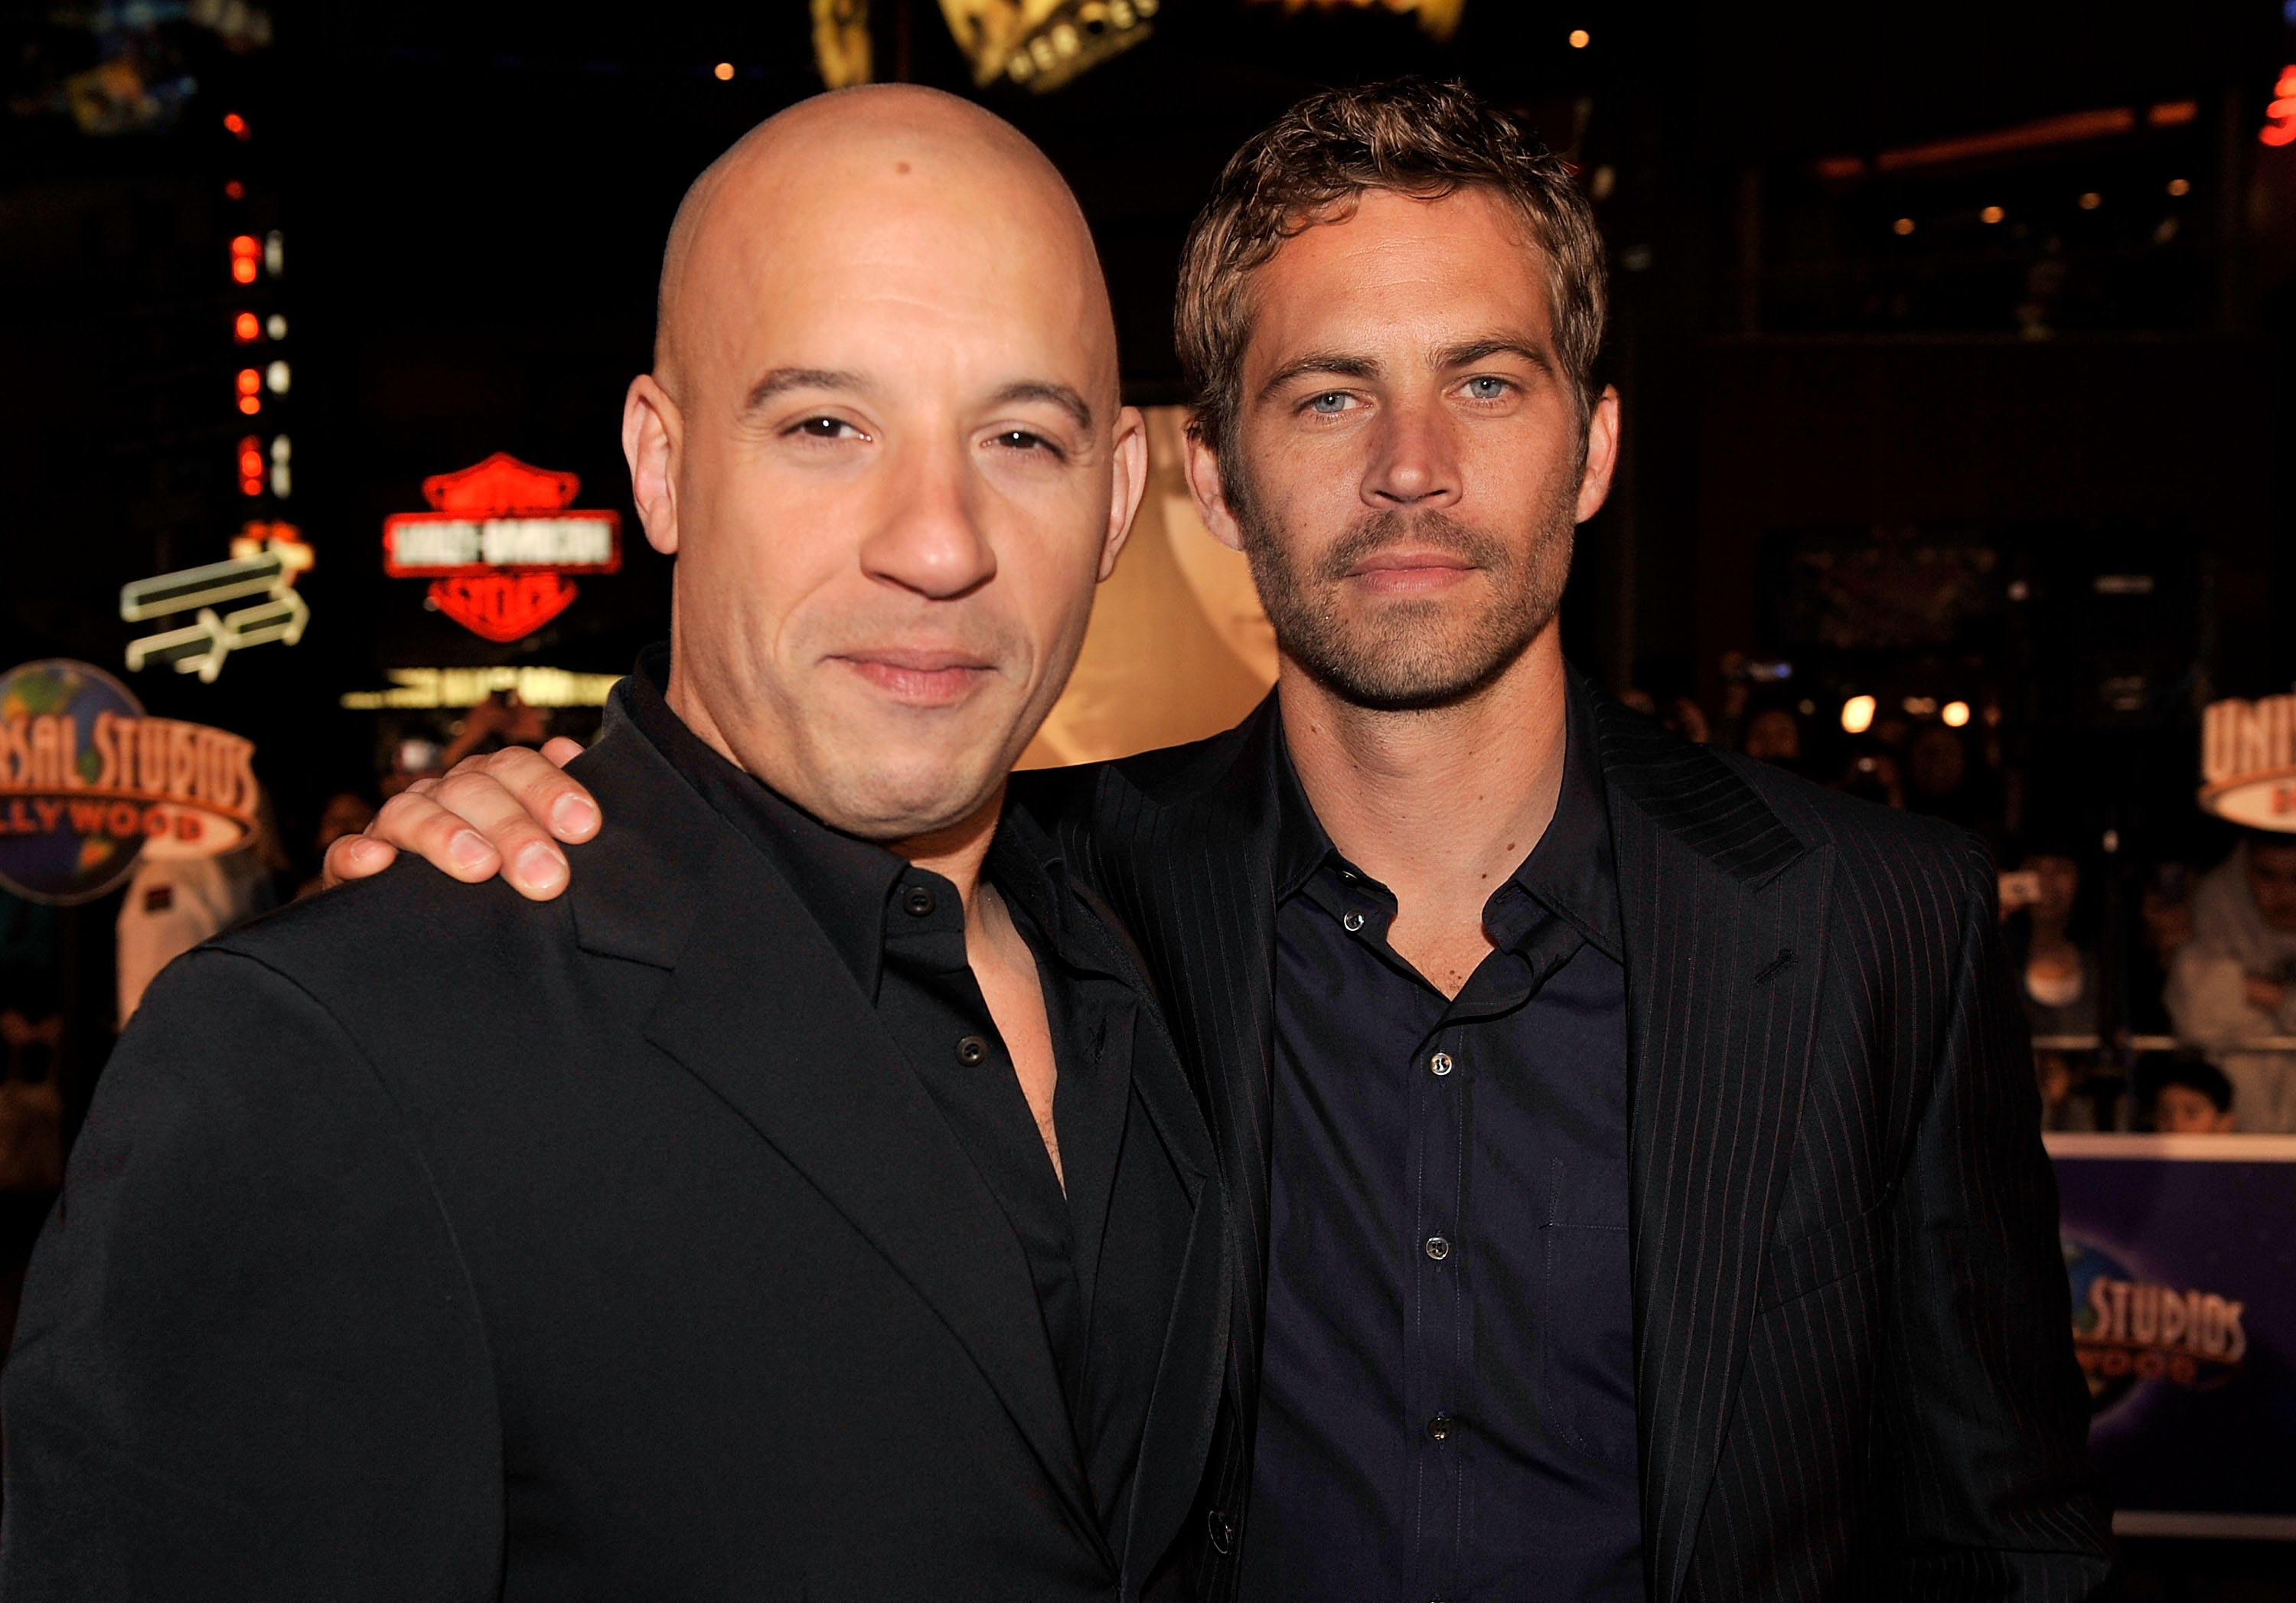  Vin Diesel and Paul Walker in California in 2009 | Source: Getty Images